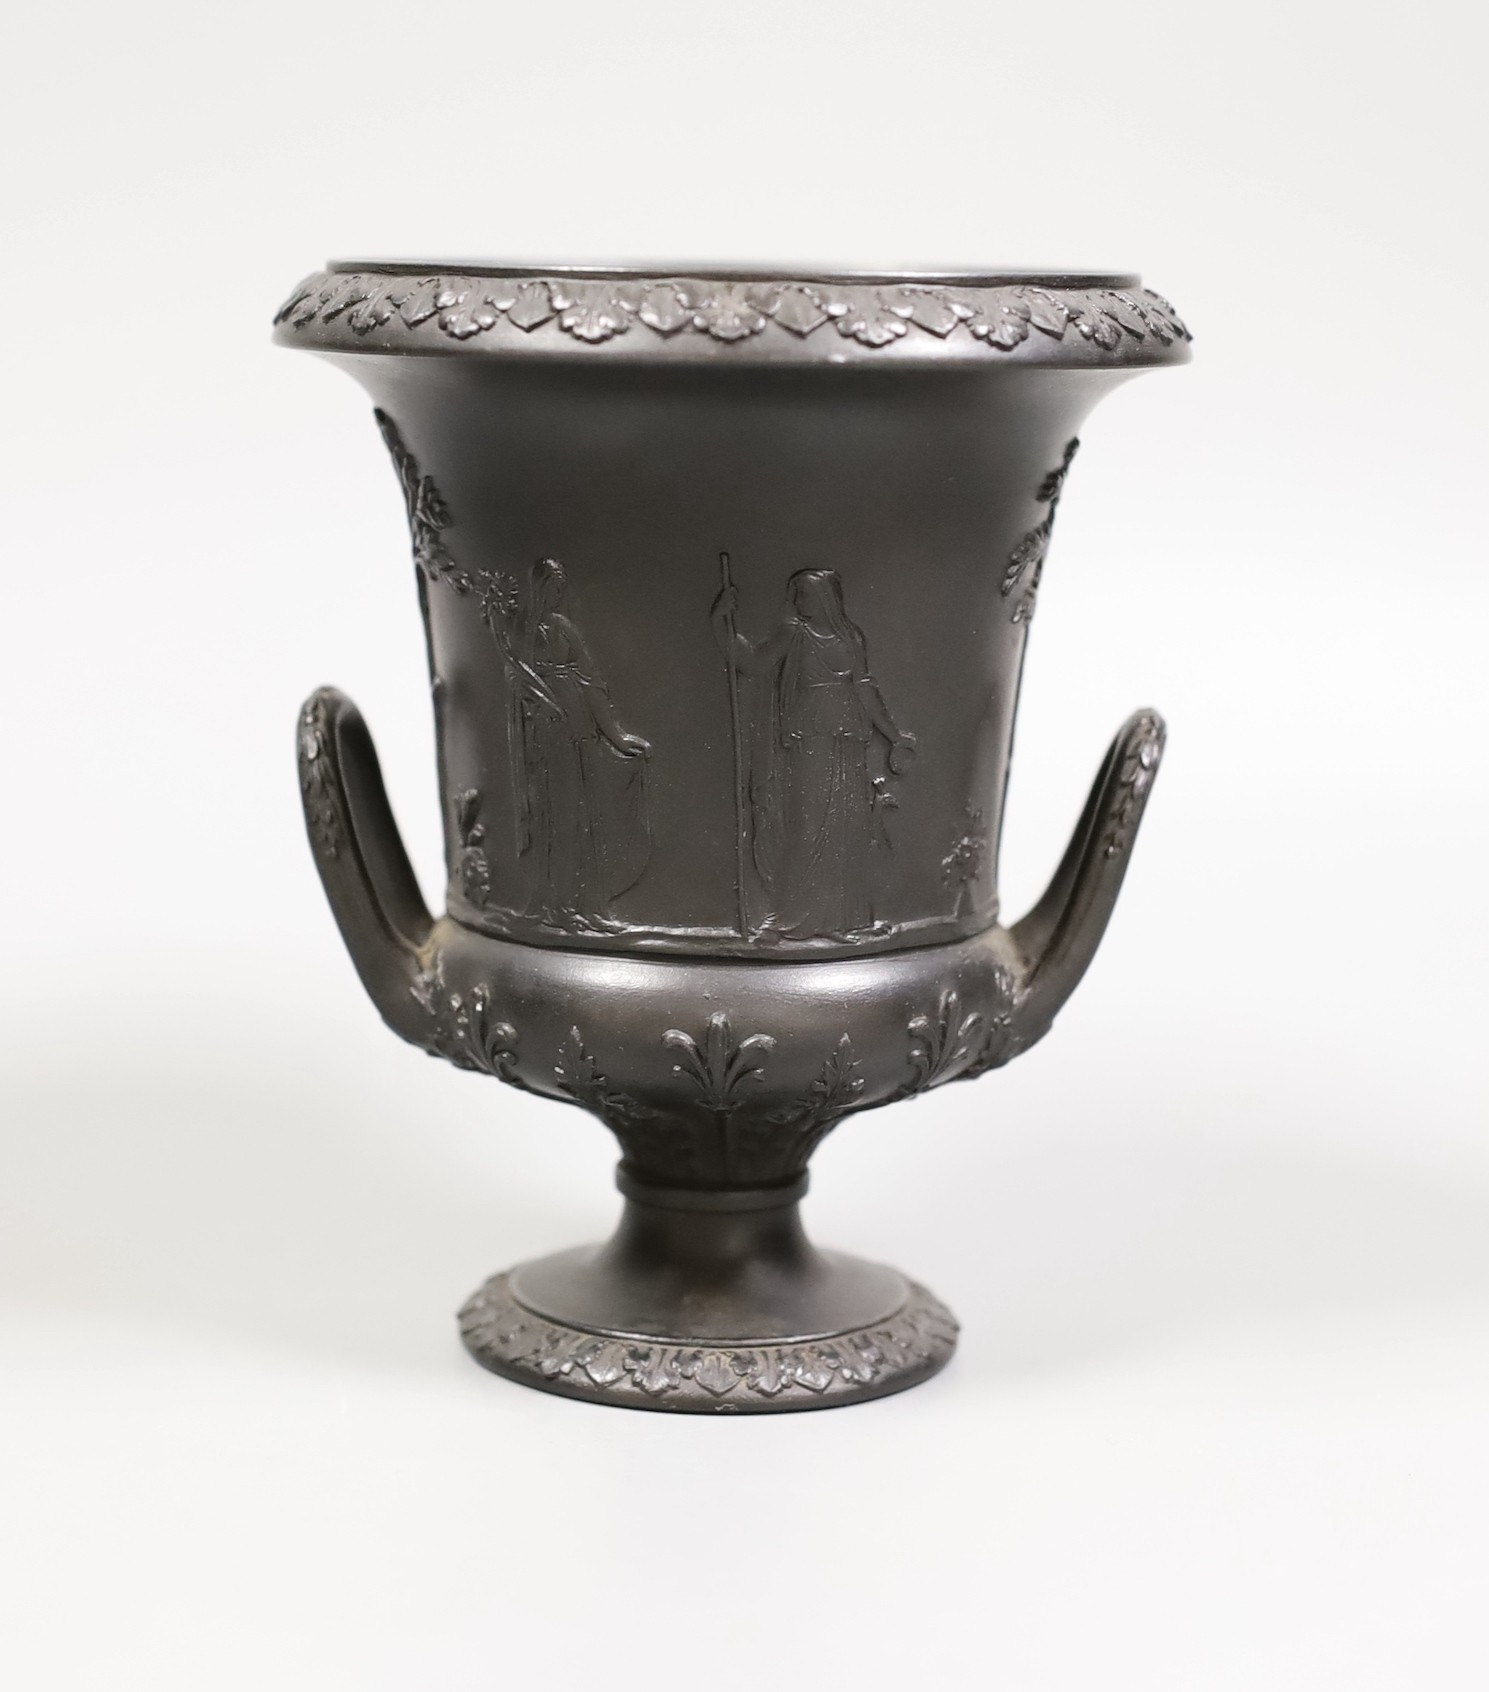 A Wedgwood black basalt urn vase, 13cm tall